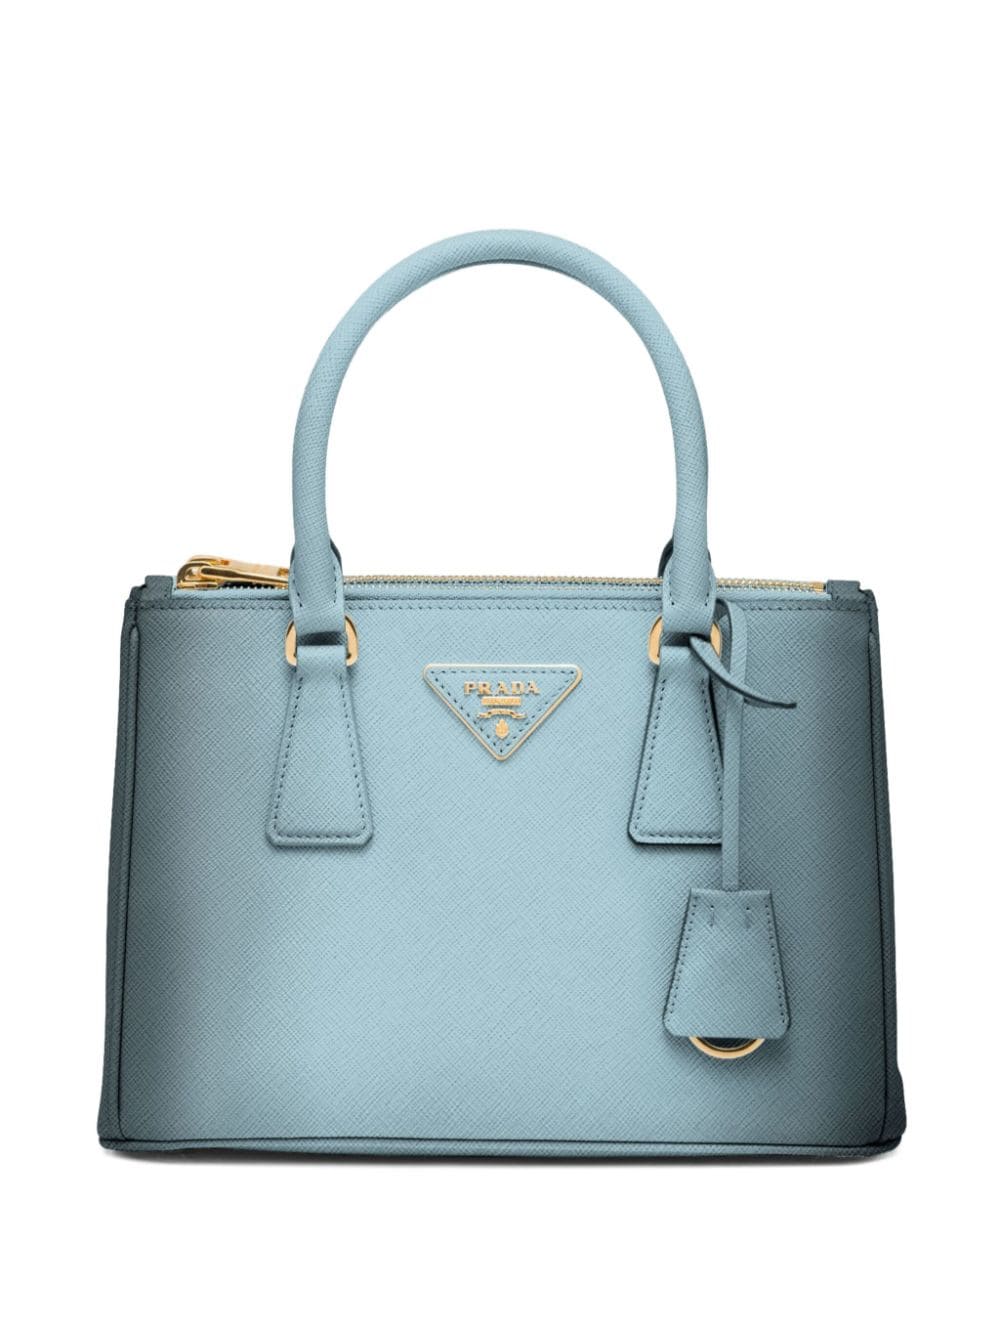 Prada Small Galleria Saffiano Leather Handbag In Blue